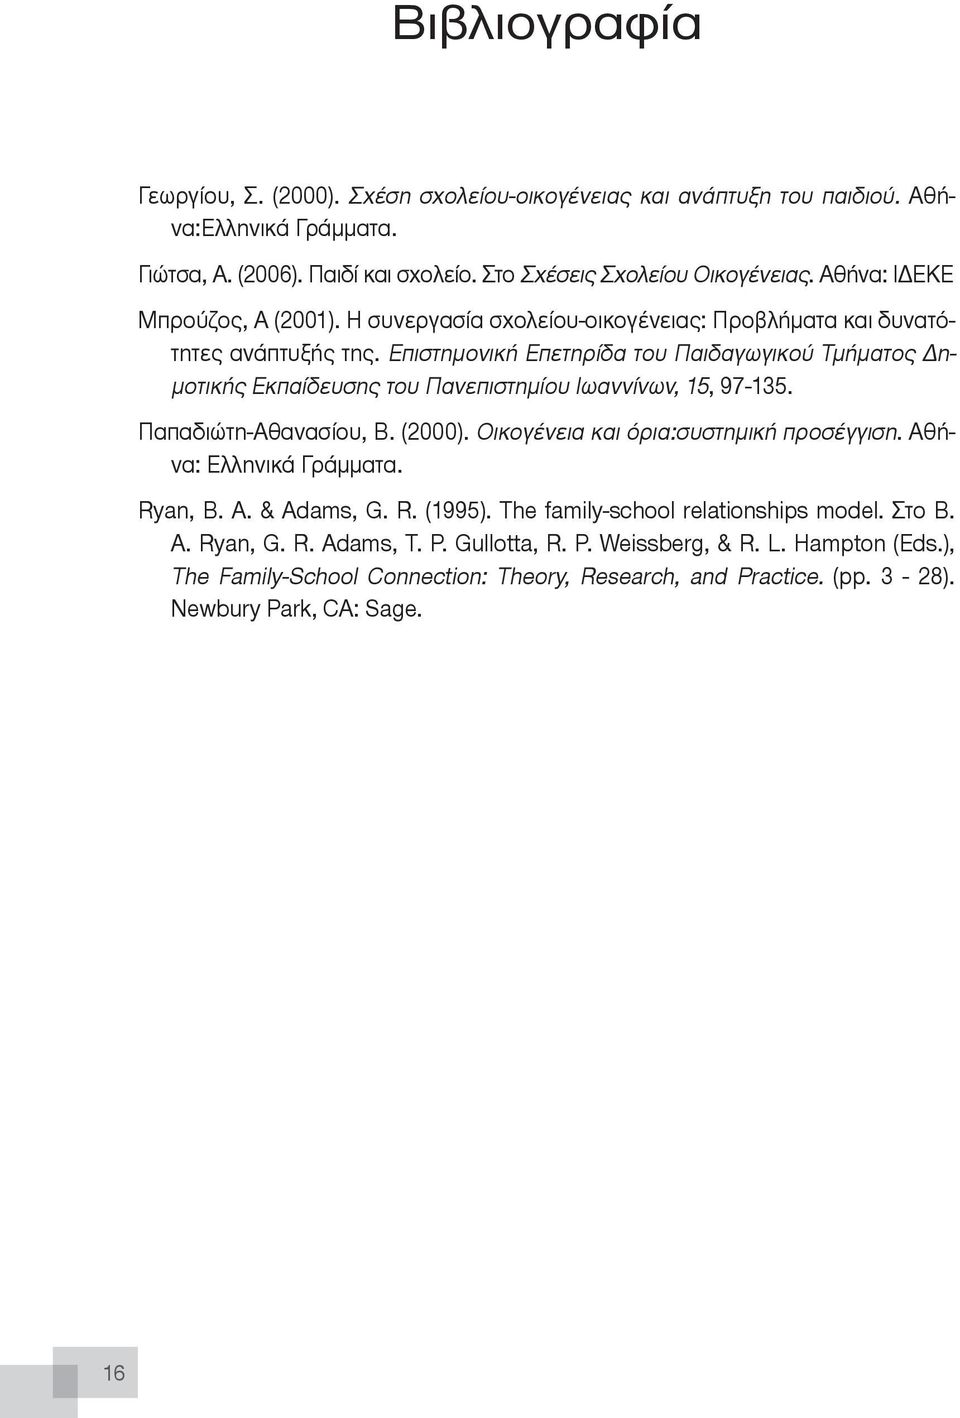 Πανεπιστημίου Ιωαννίνων, 15, 97-135 Παπαδιώτη-Αθανασίου, Β (2000) Οικογένεια και όρια:συστημική προσέγγιση Αθήνα: Ελληνικά Γράμματα Ryan, B A & Adams, G R (1995) The family-school